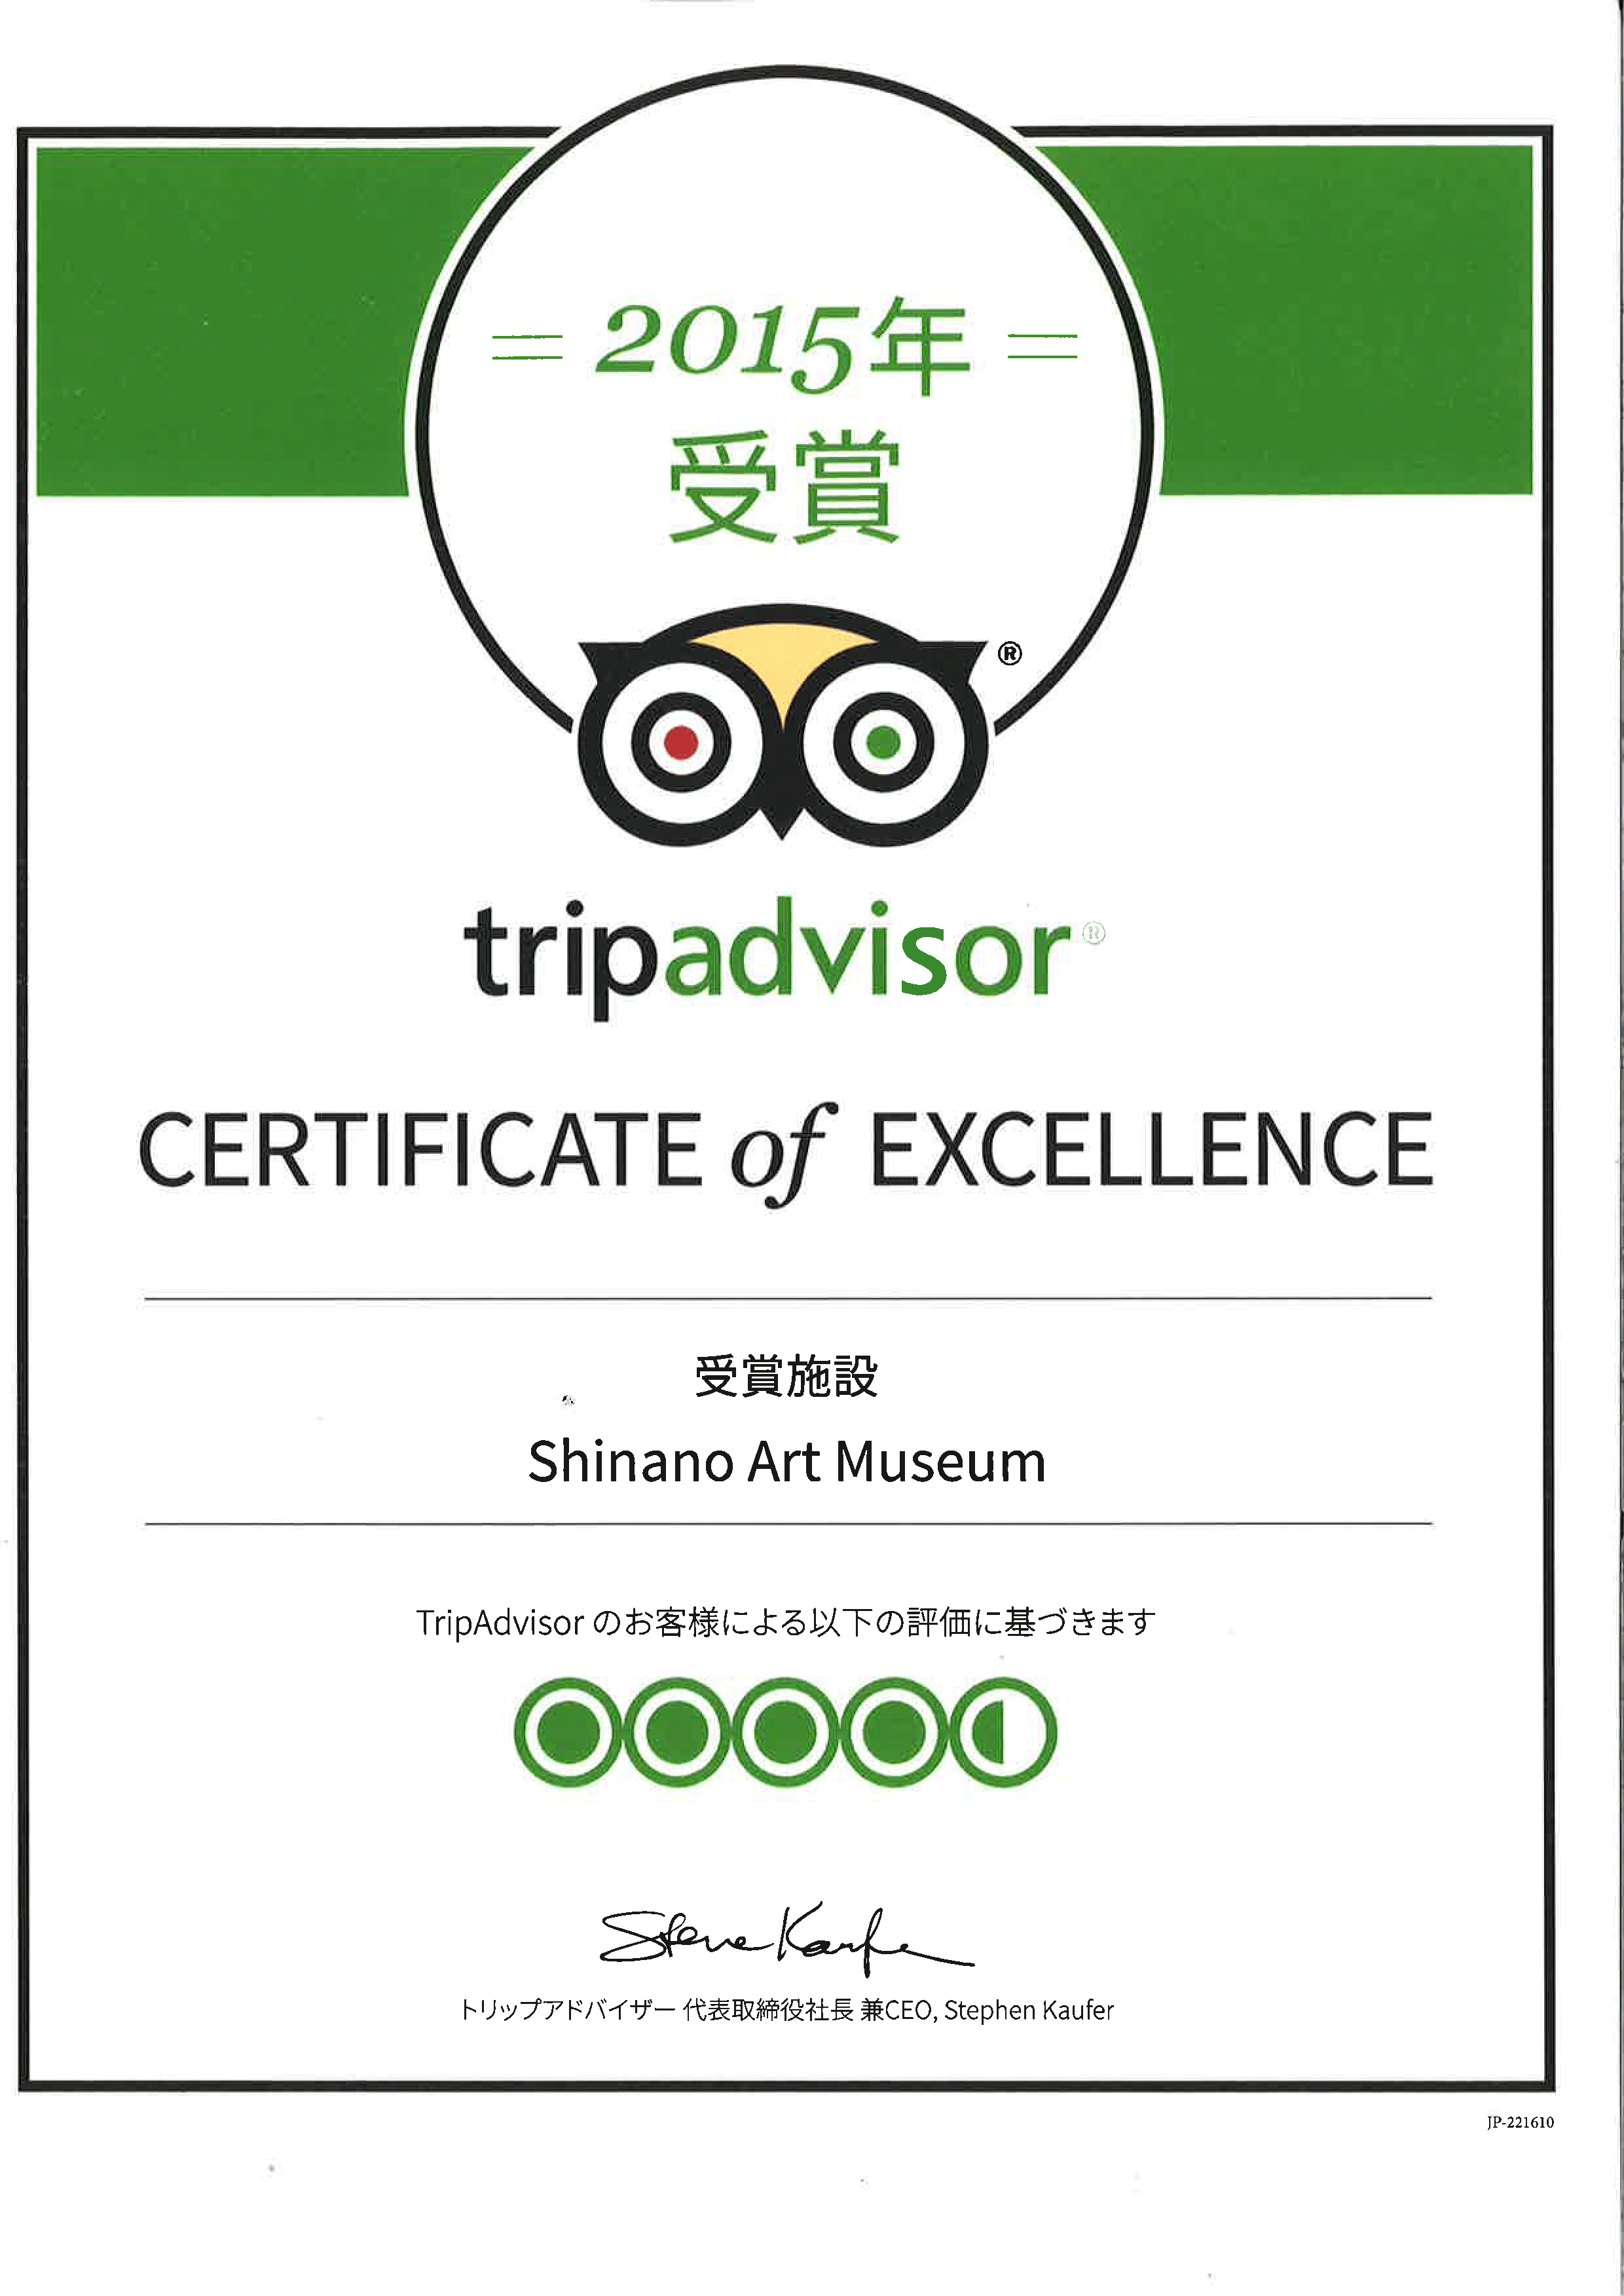 旅行サイト“trip advisor”（トリップアドバイザー）が認定する“Certificate of Excellence”（エクセレンス認証）が当館に授与されました。